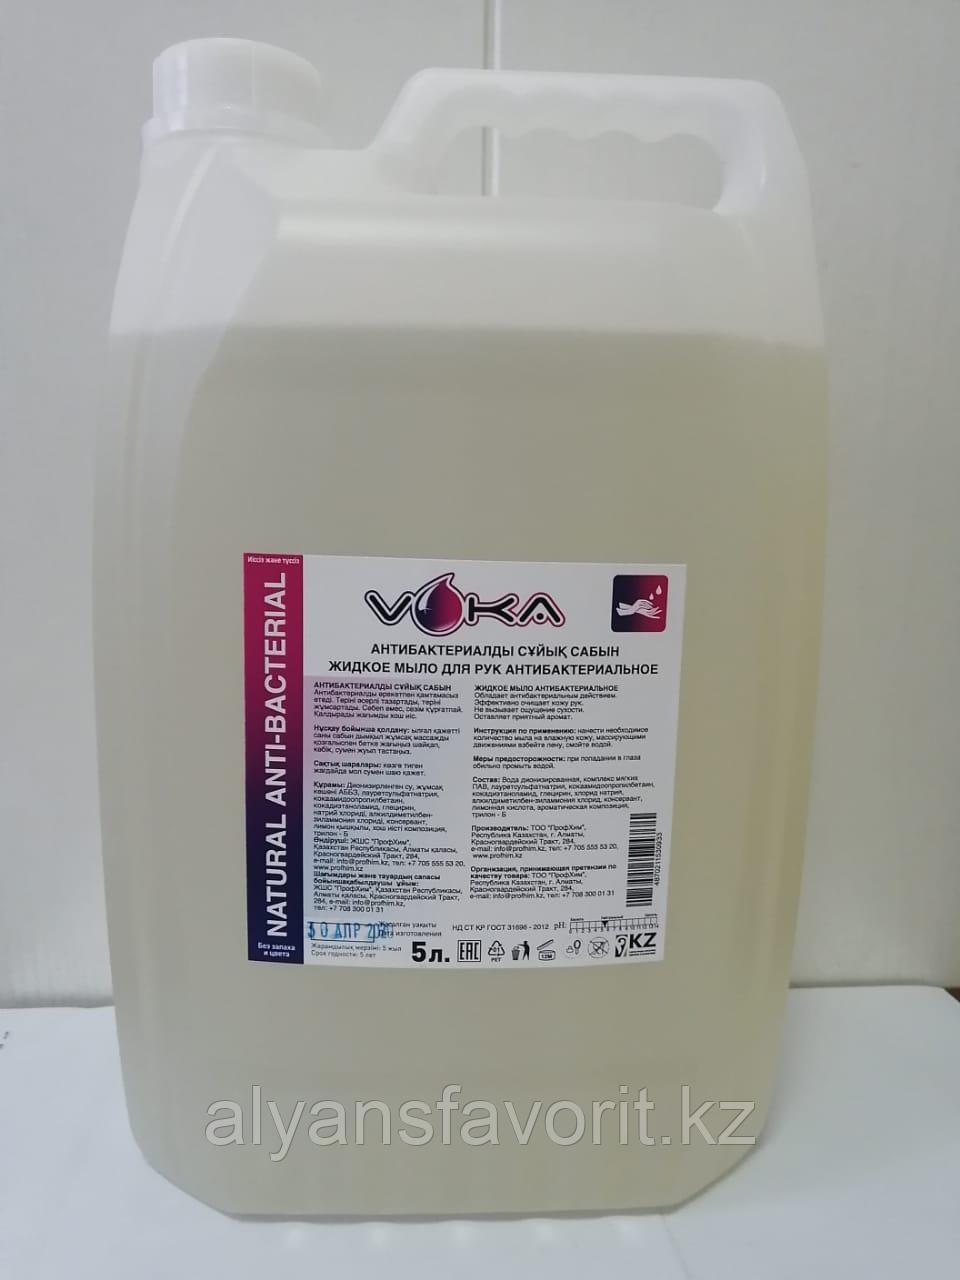 Voka Naturel- антибактериальное/бактерецидное жидкое мыло для рук . 5 литров. РК